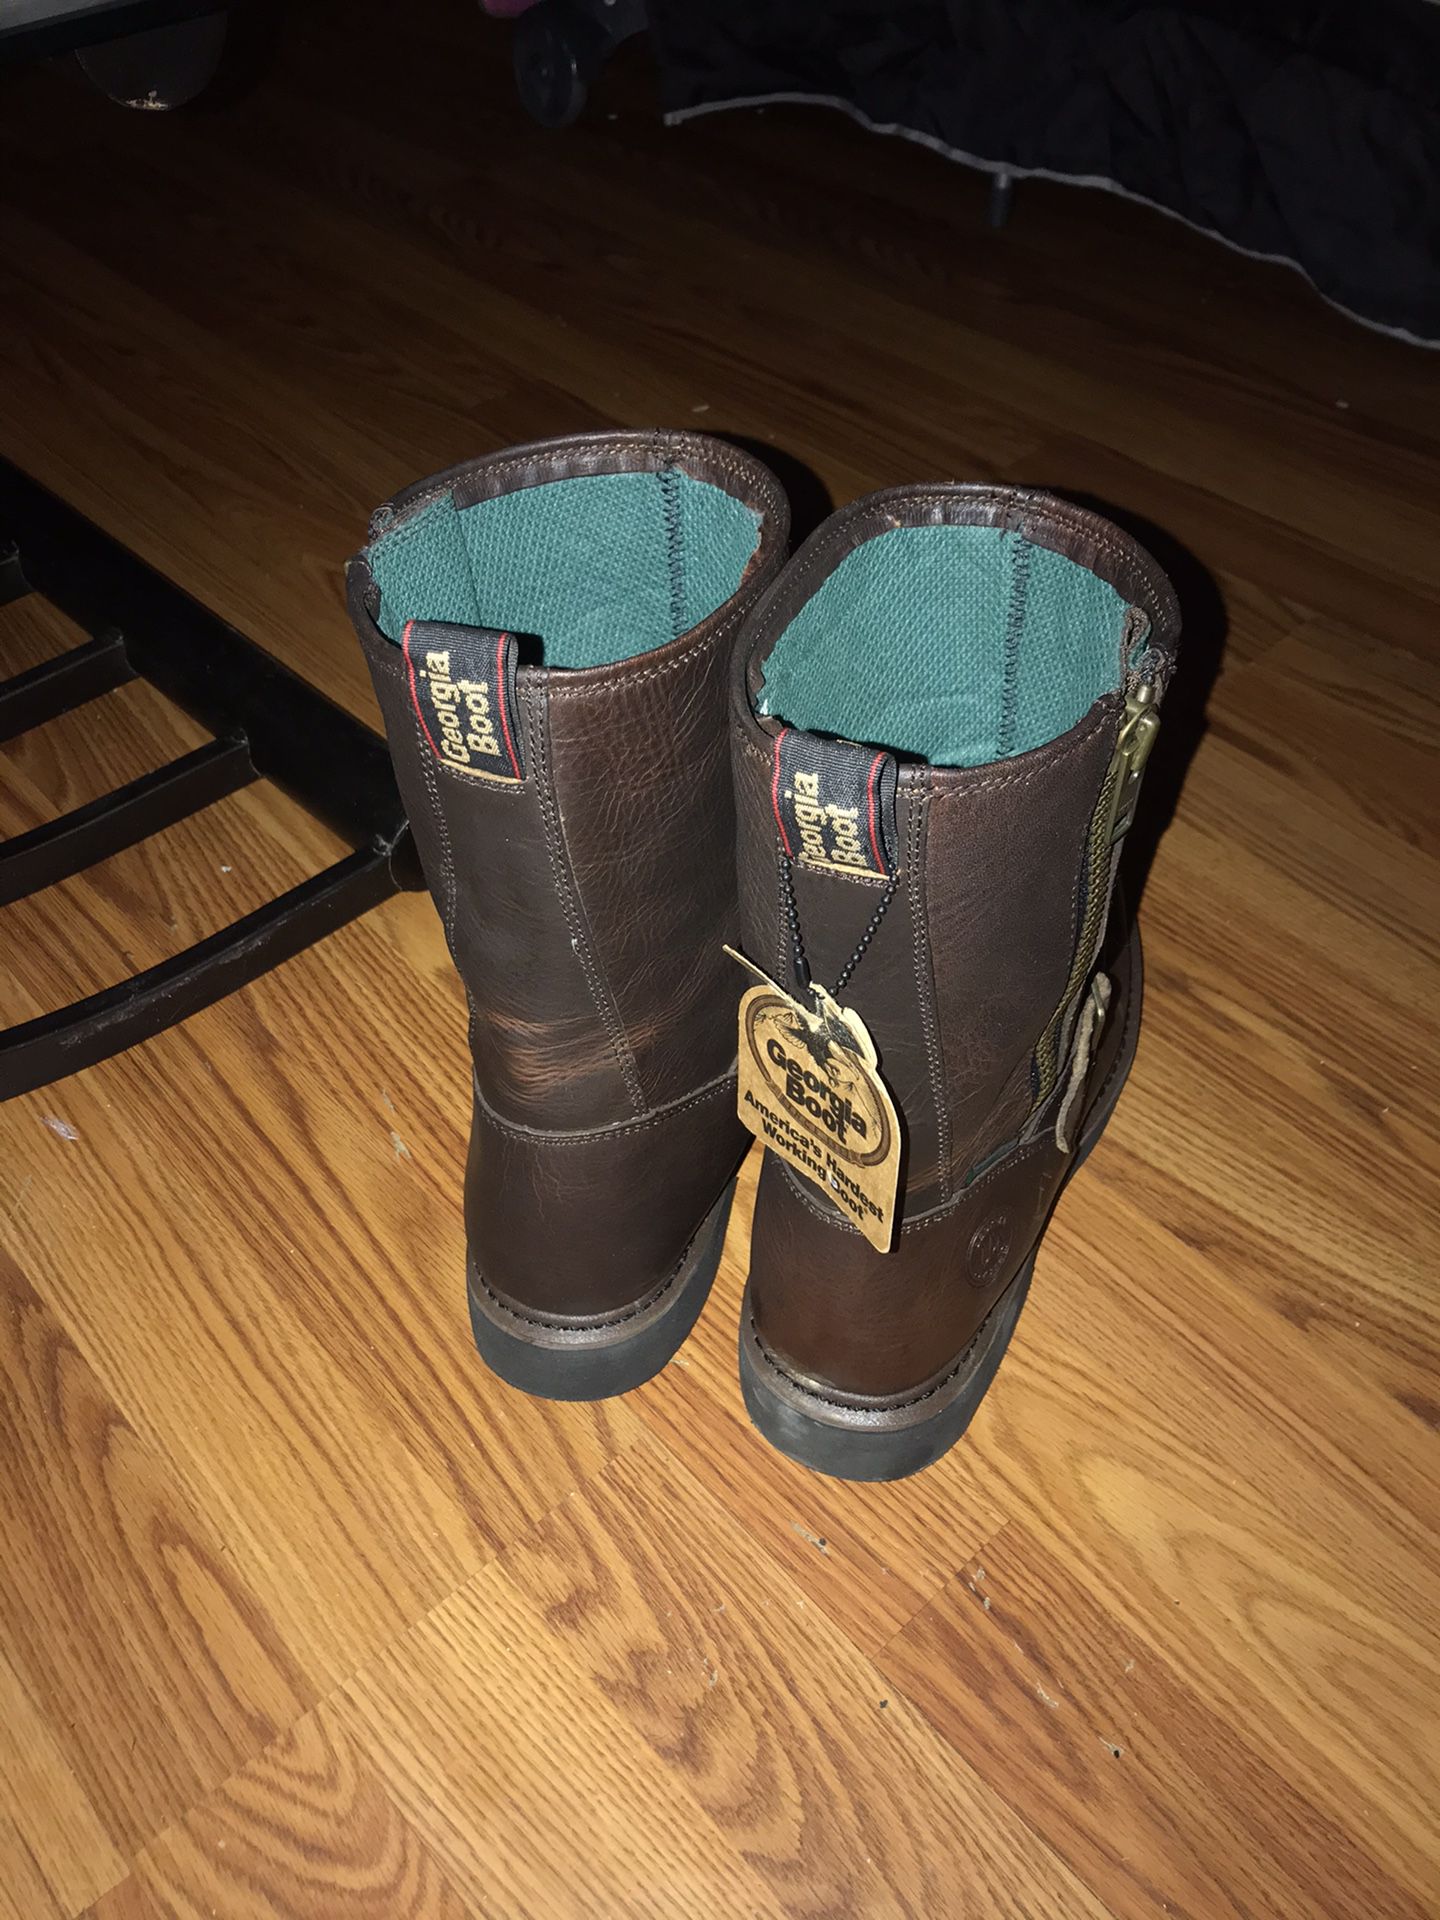 Georgia men’s water proof work boots